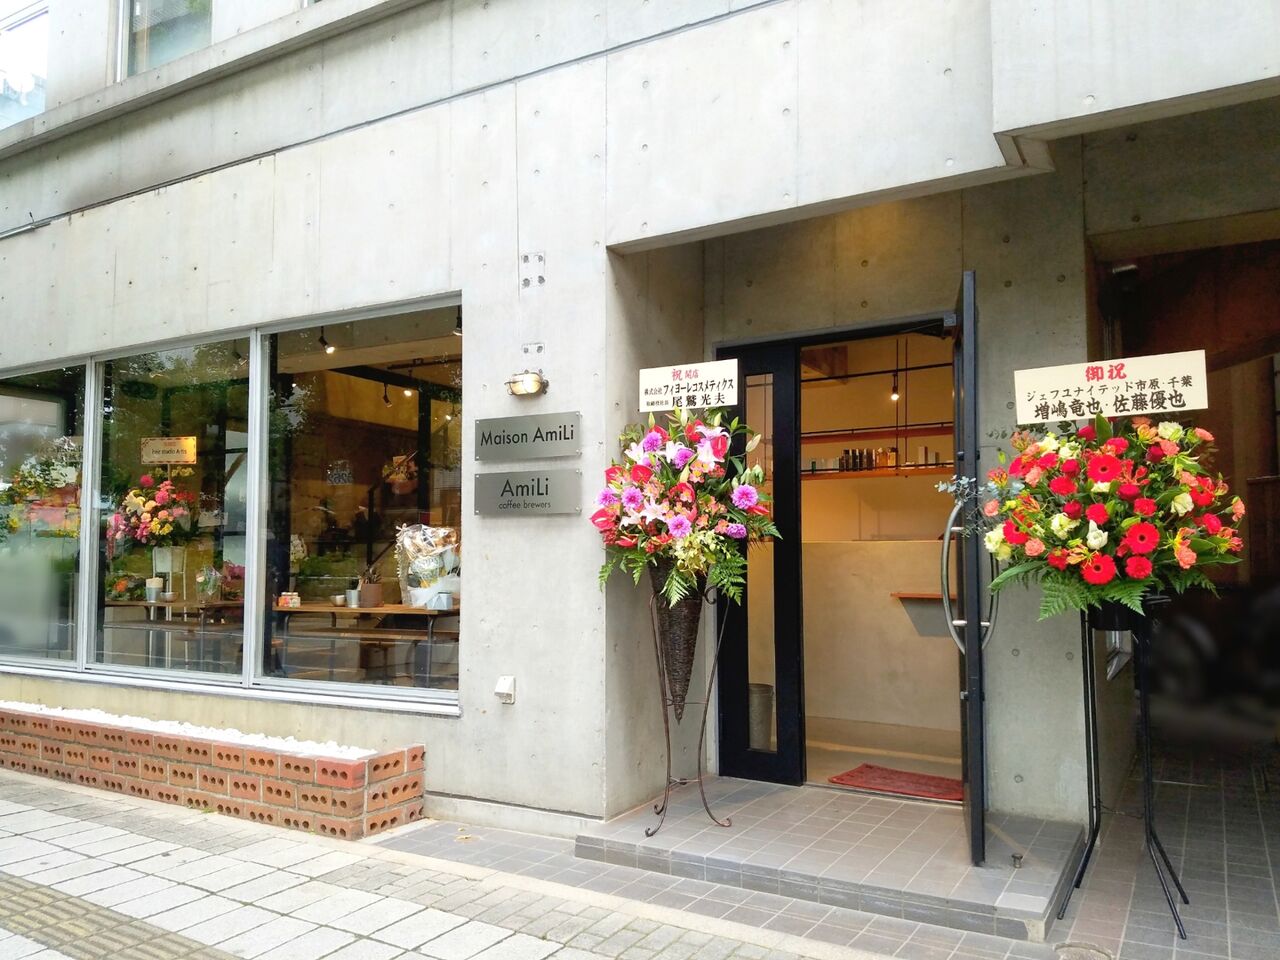 中央区登戸に美容室 Maison Amili メゾンアミリ とコーヒースタンド Amili Coffee Brewers がオープンしてる ちば通信 千葉県千葉市の地域情報サイト